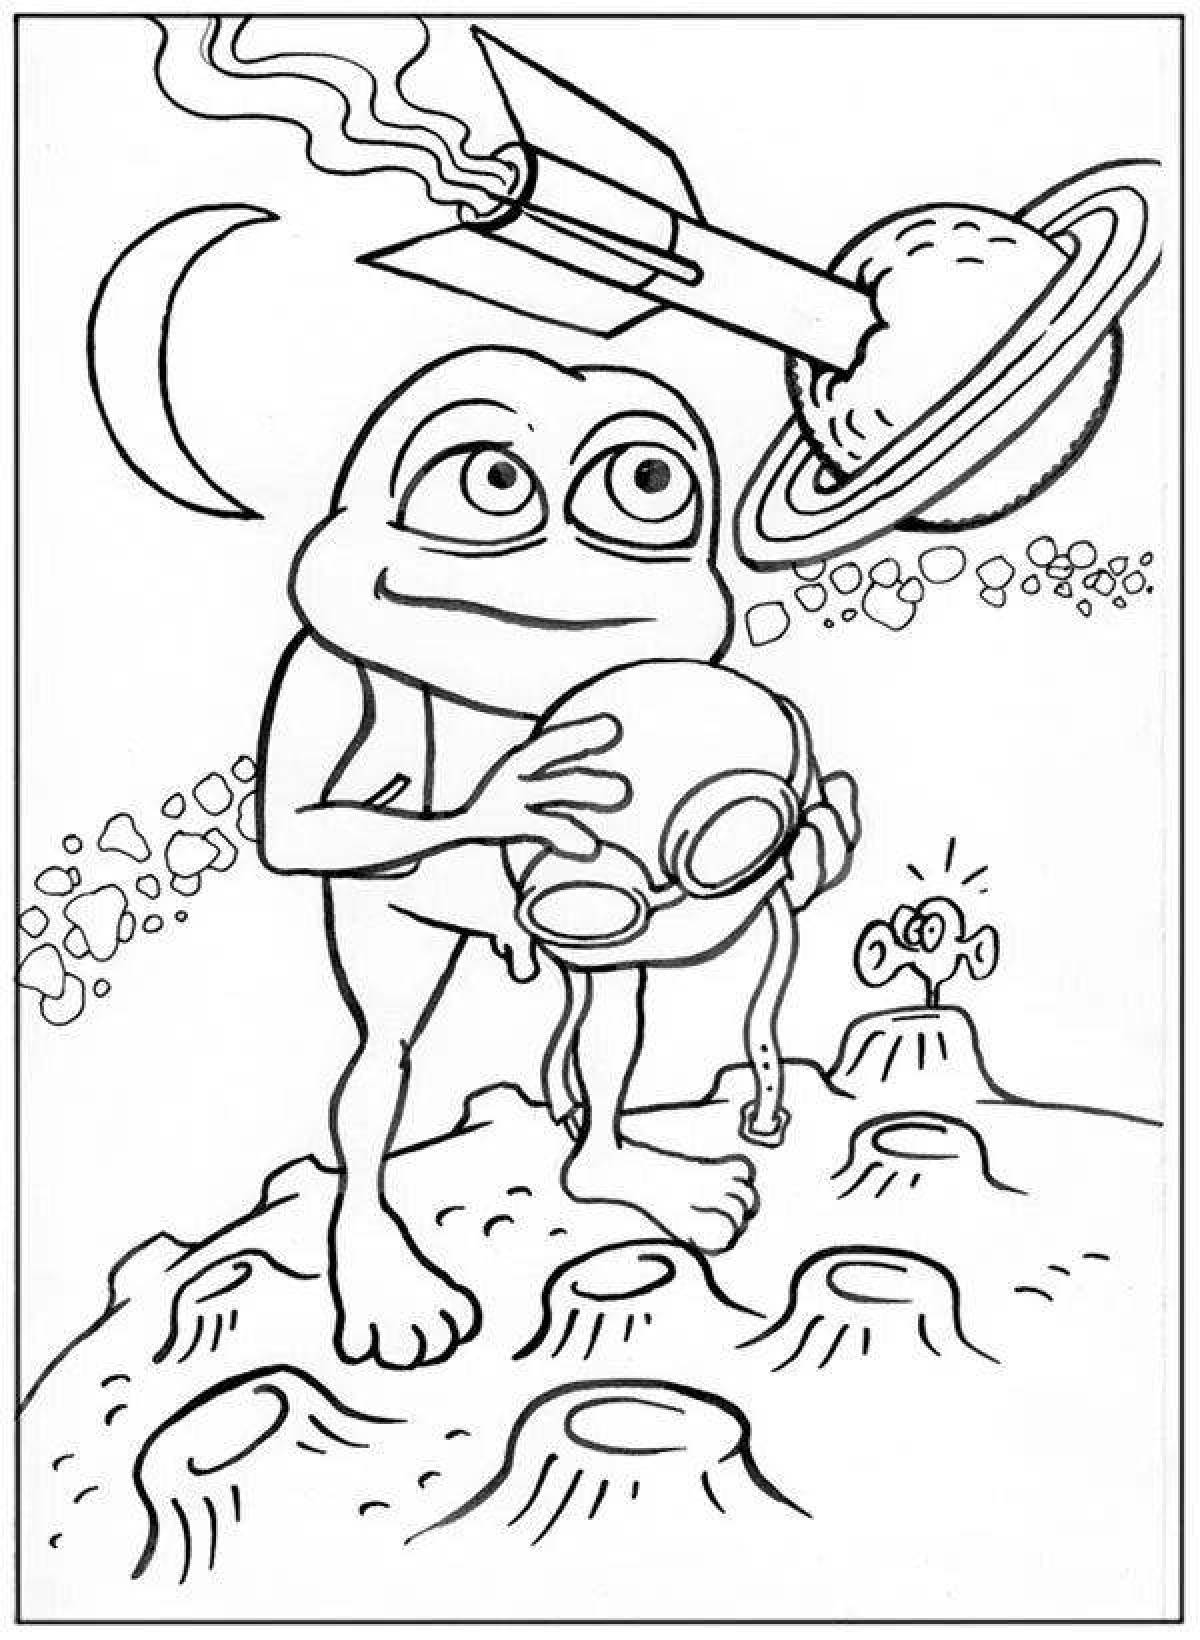 Fantastic crazy frog coloring book